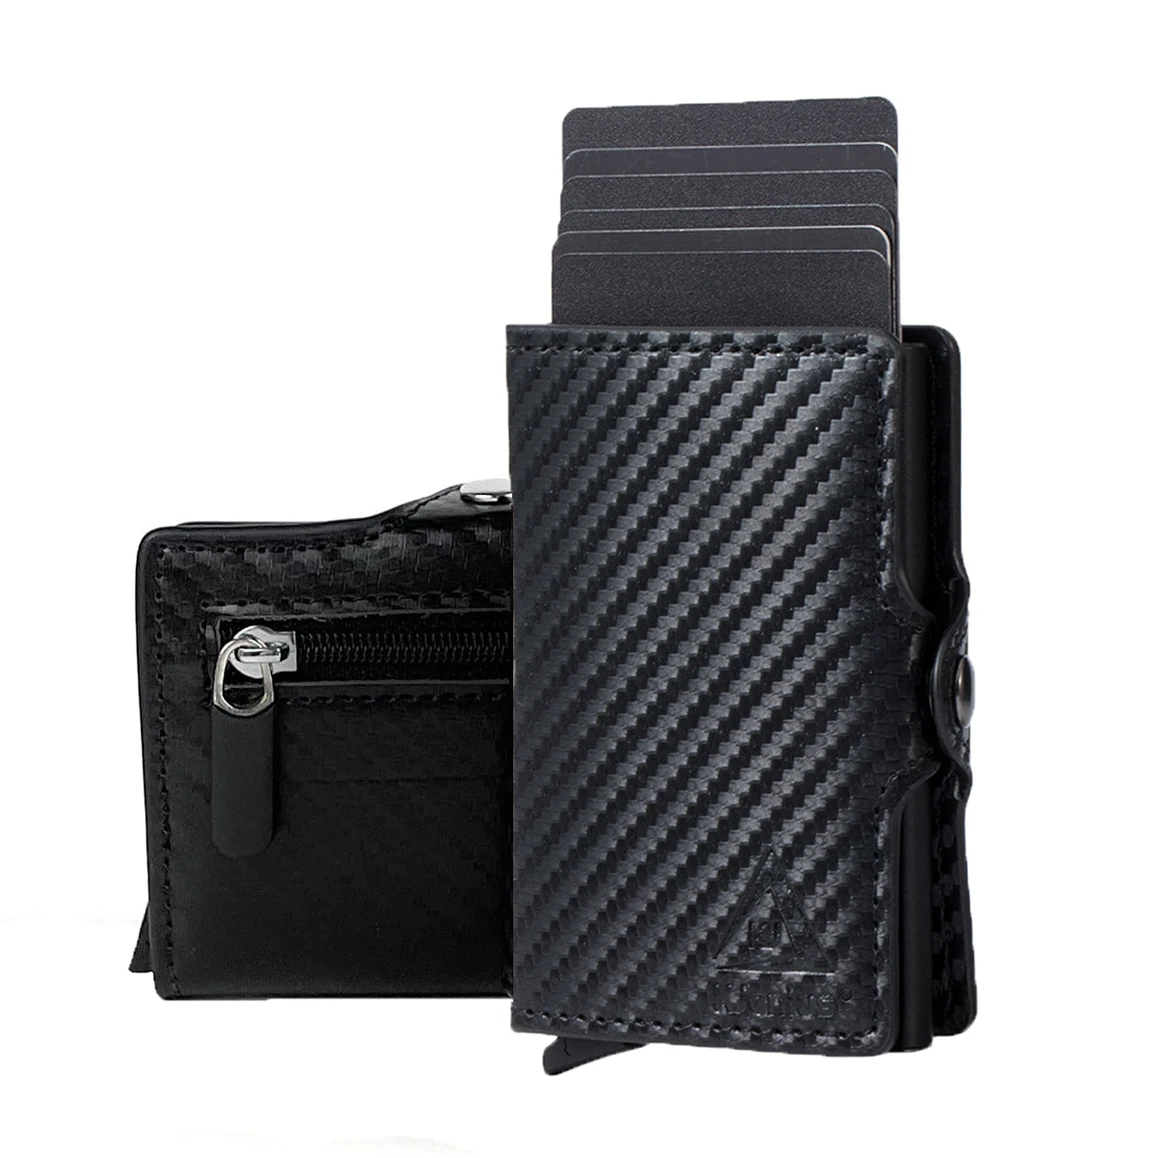 Tanio Luksusowy portfel męski RFID Slim kompaktowy uchwyt